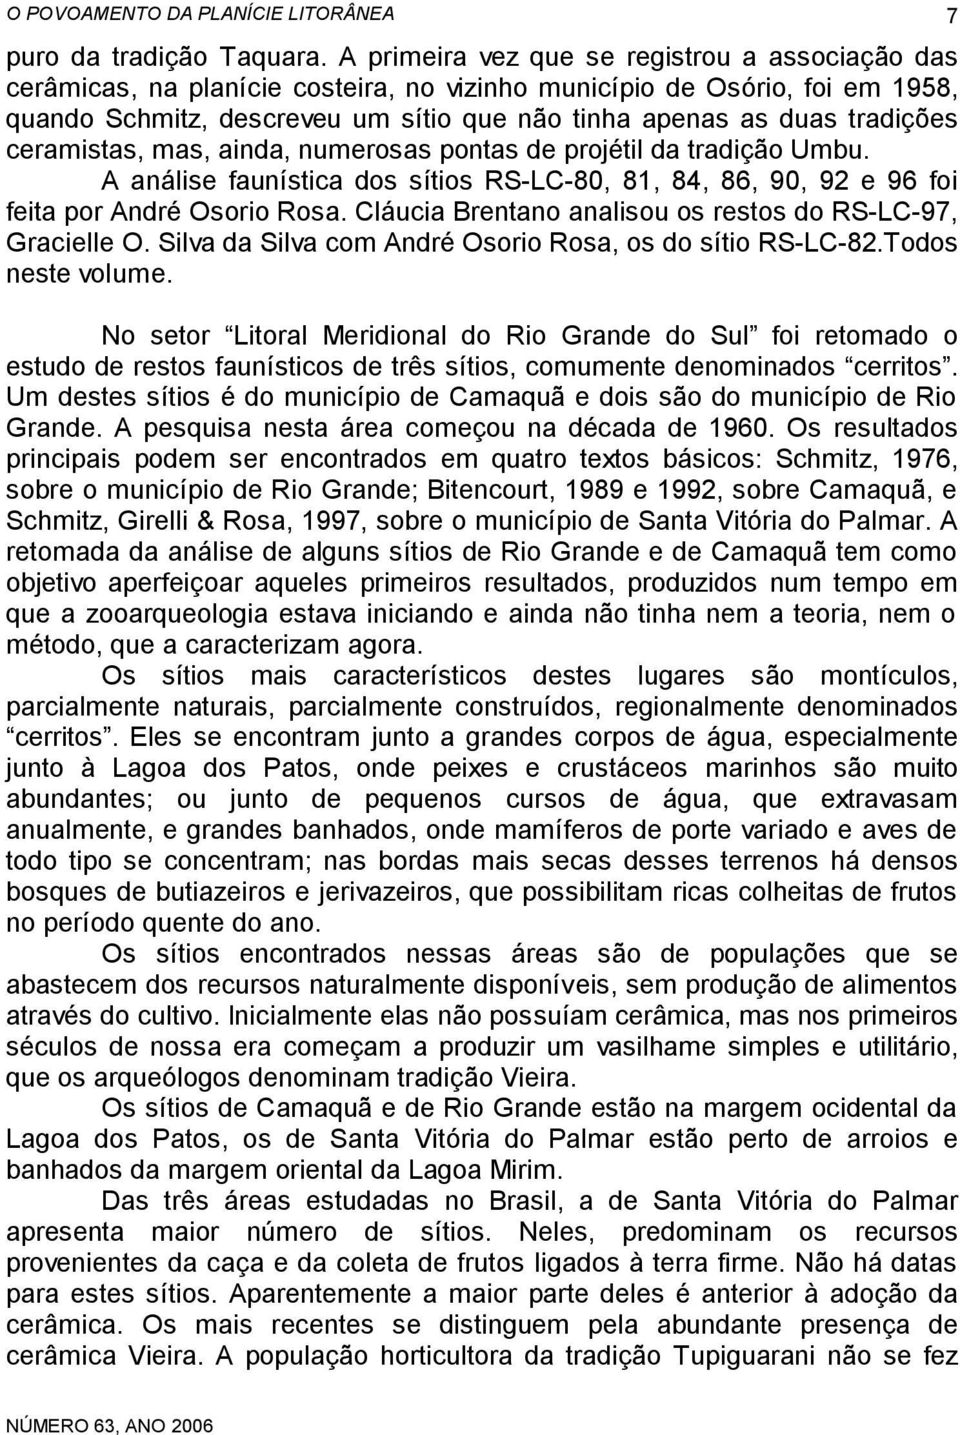 tradições ceramistas, mas, ainda, numerosas pontas de projétil da tradição Umbu. A análise faunística dos sítios RS-LC-80, 81, 84, 86, 90, 92 e 96 foi feita por André Osorio Rosa.